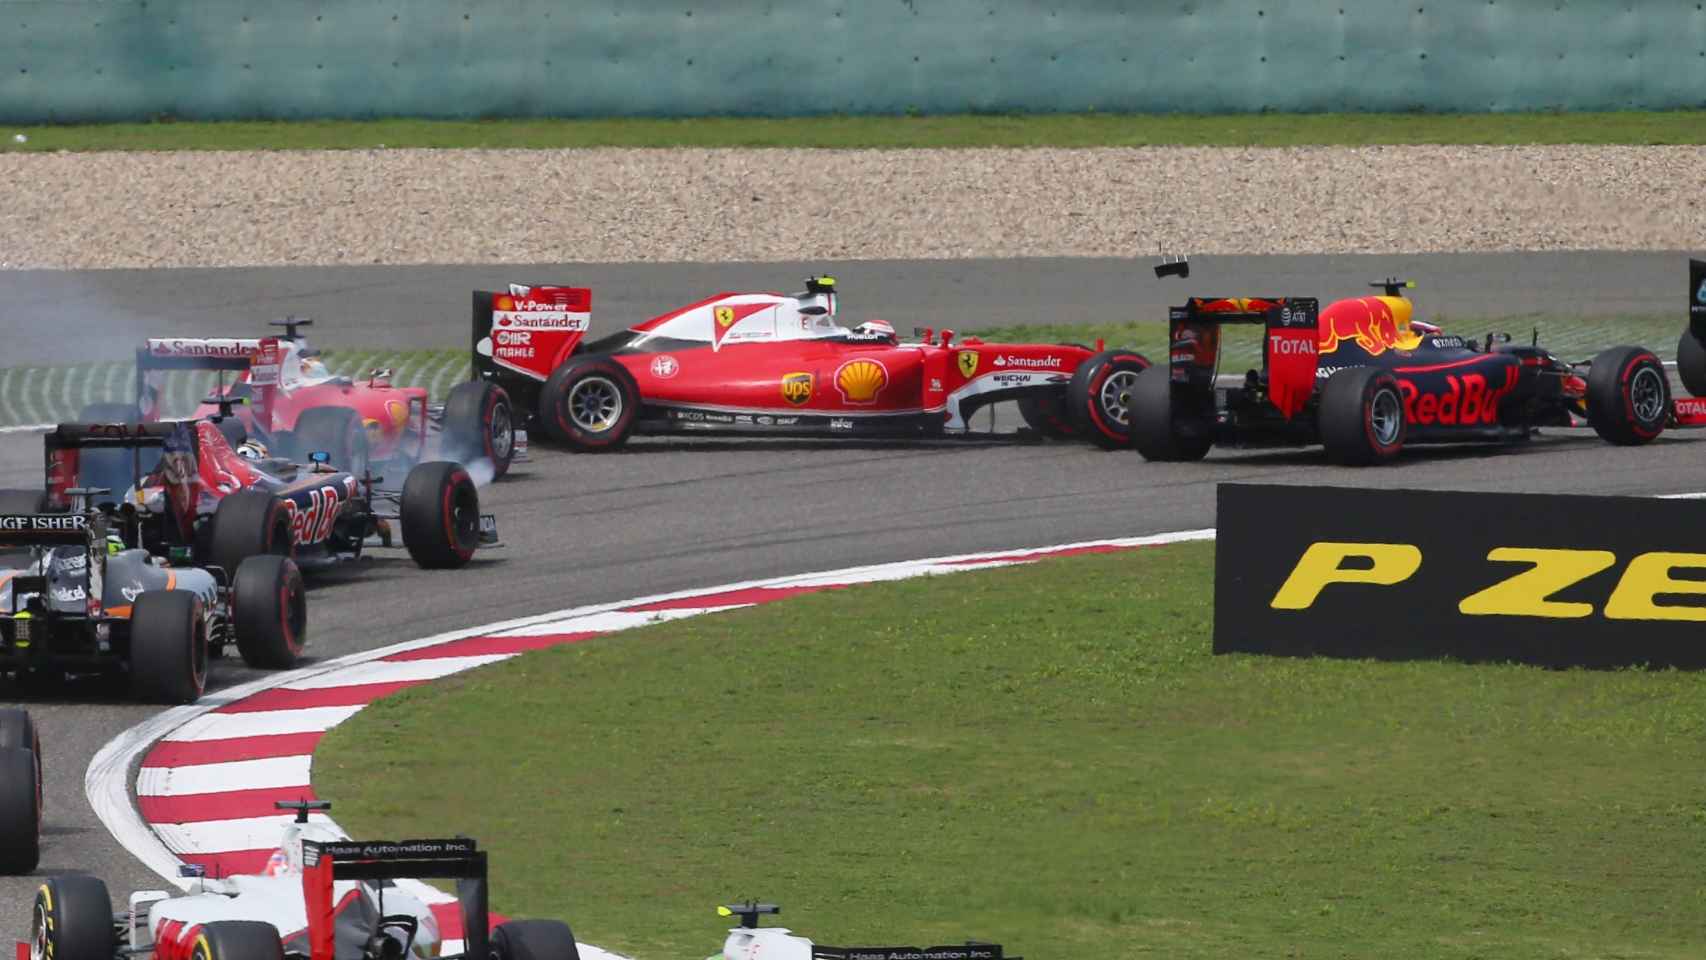 Momento en el que Vettel impacta contra su compañero Raikkonen